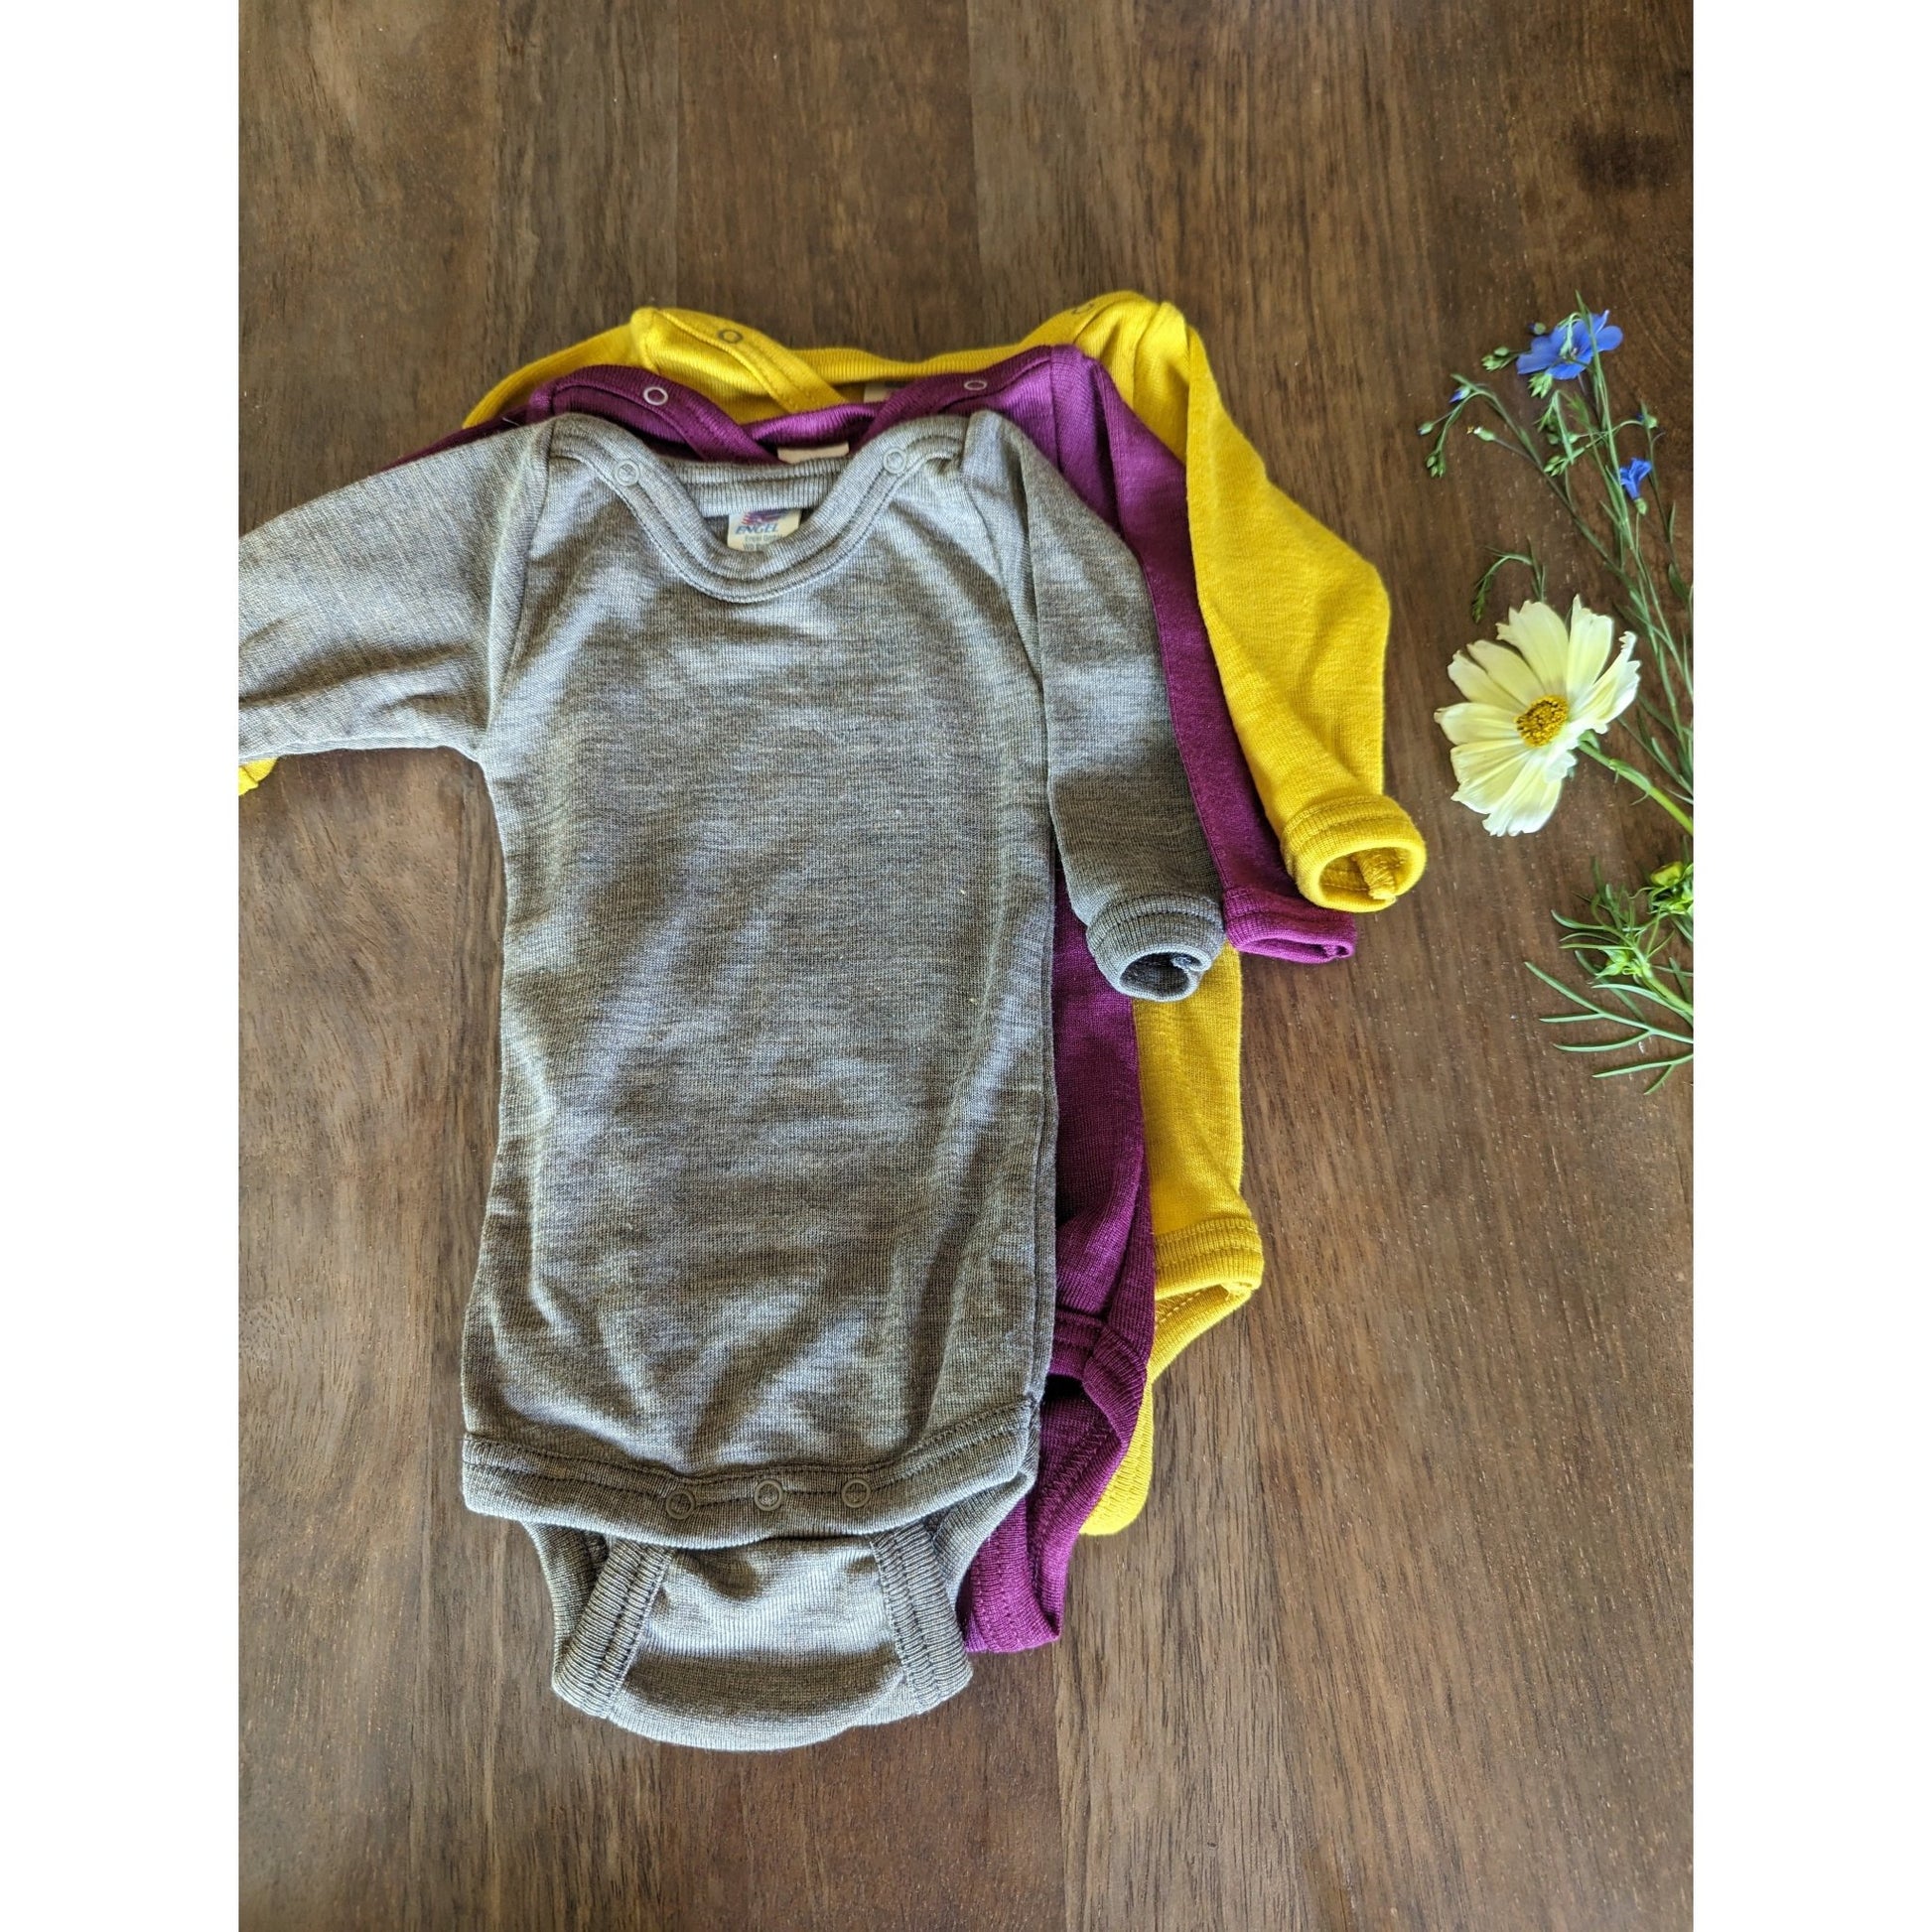 Engel - Baby Thermal Bodysuit with Long Sleeves, 70% Merino Wool 30% Silk,  Sizes Newborn 